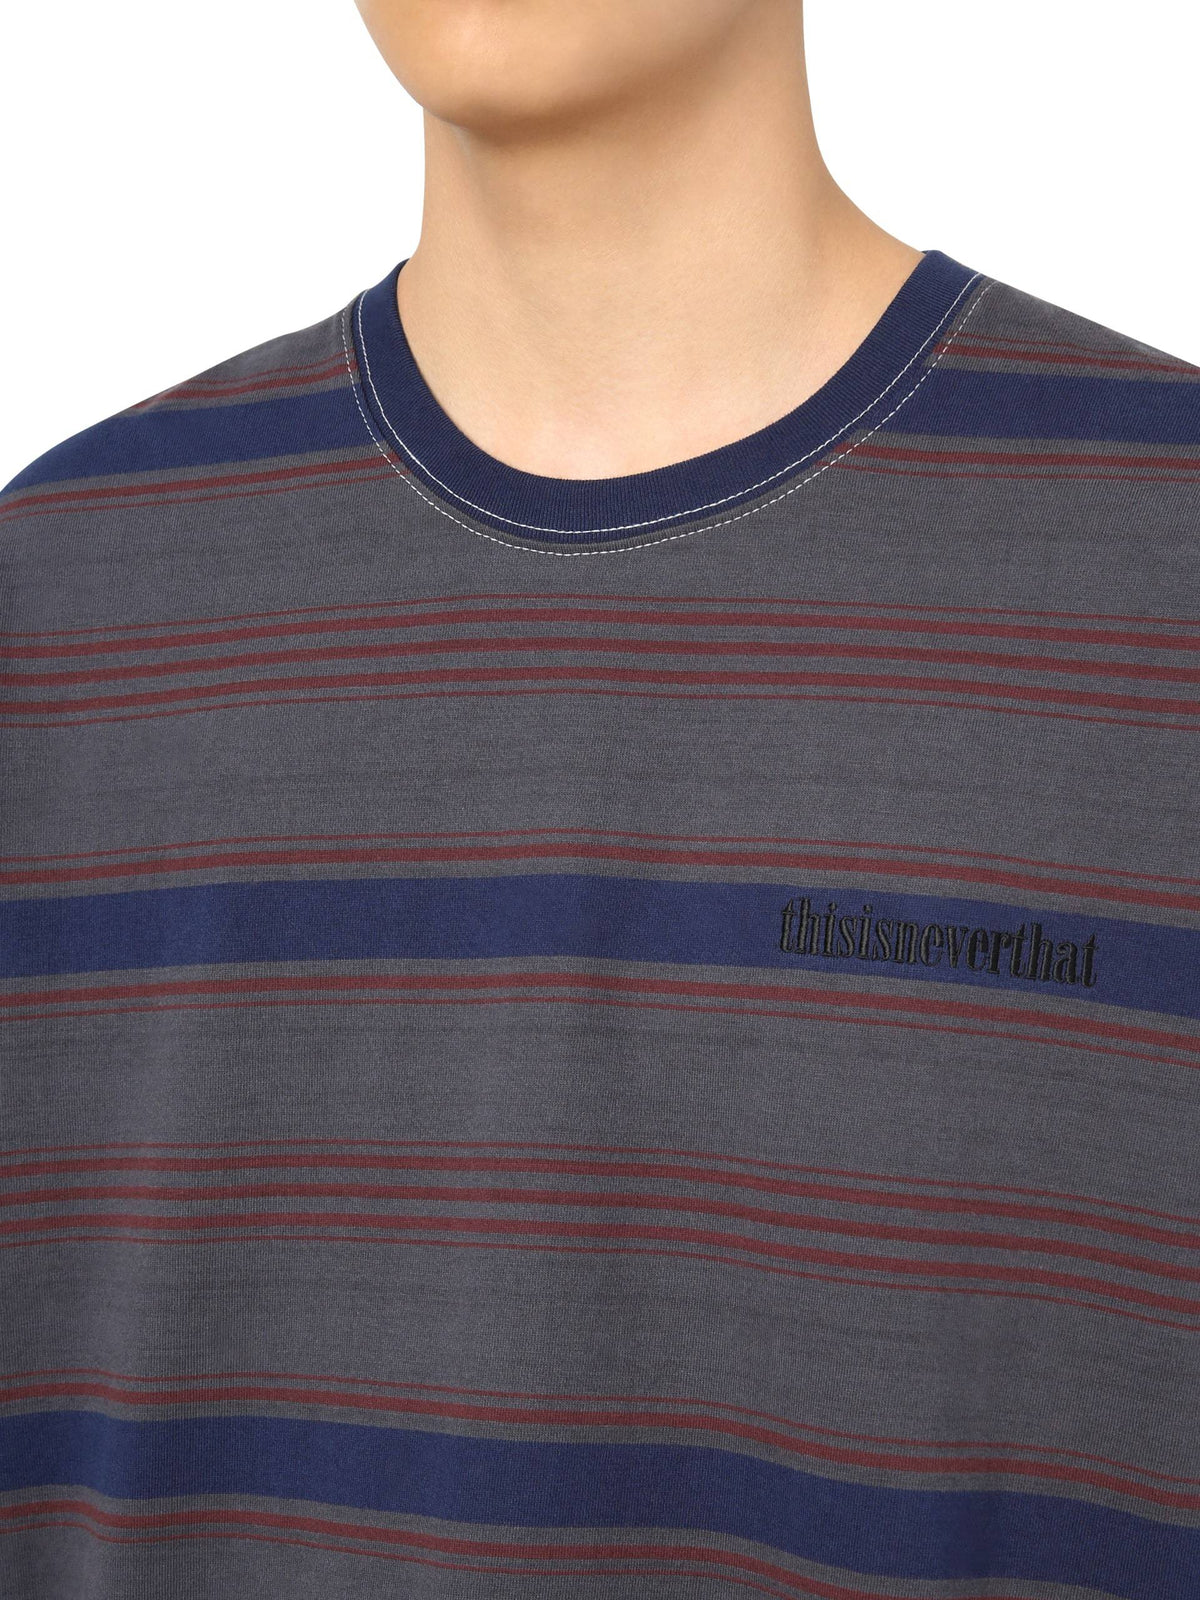 Onyx Striped L/SL Top L/SL T-Shirt 